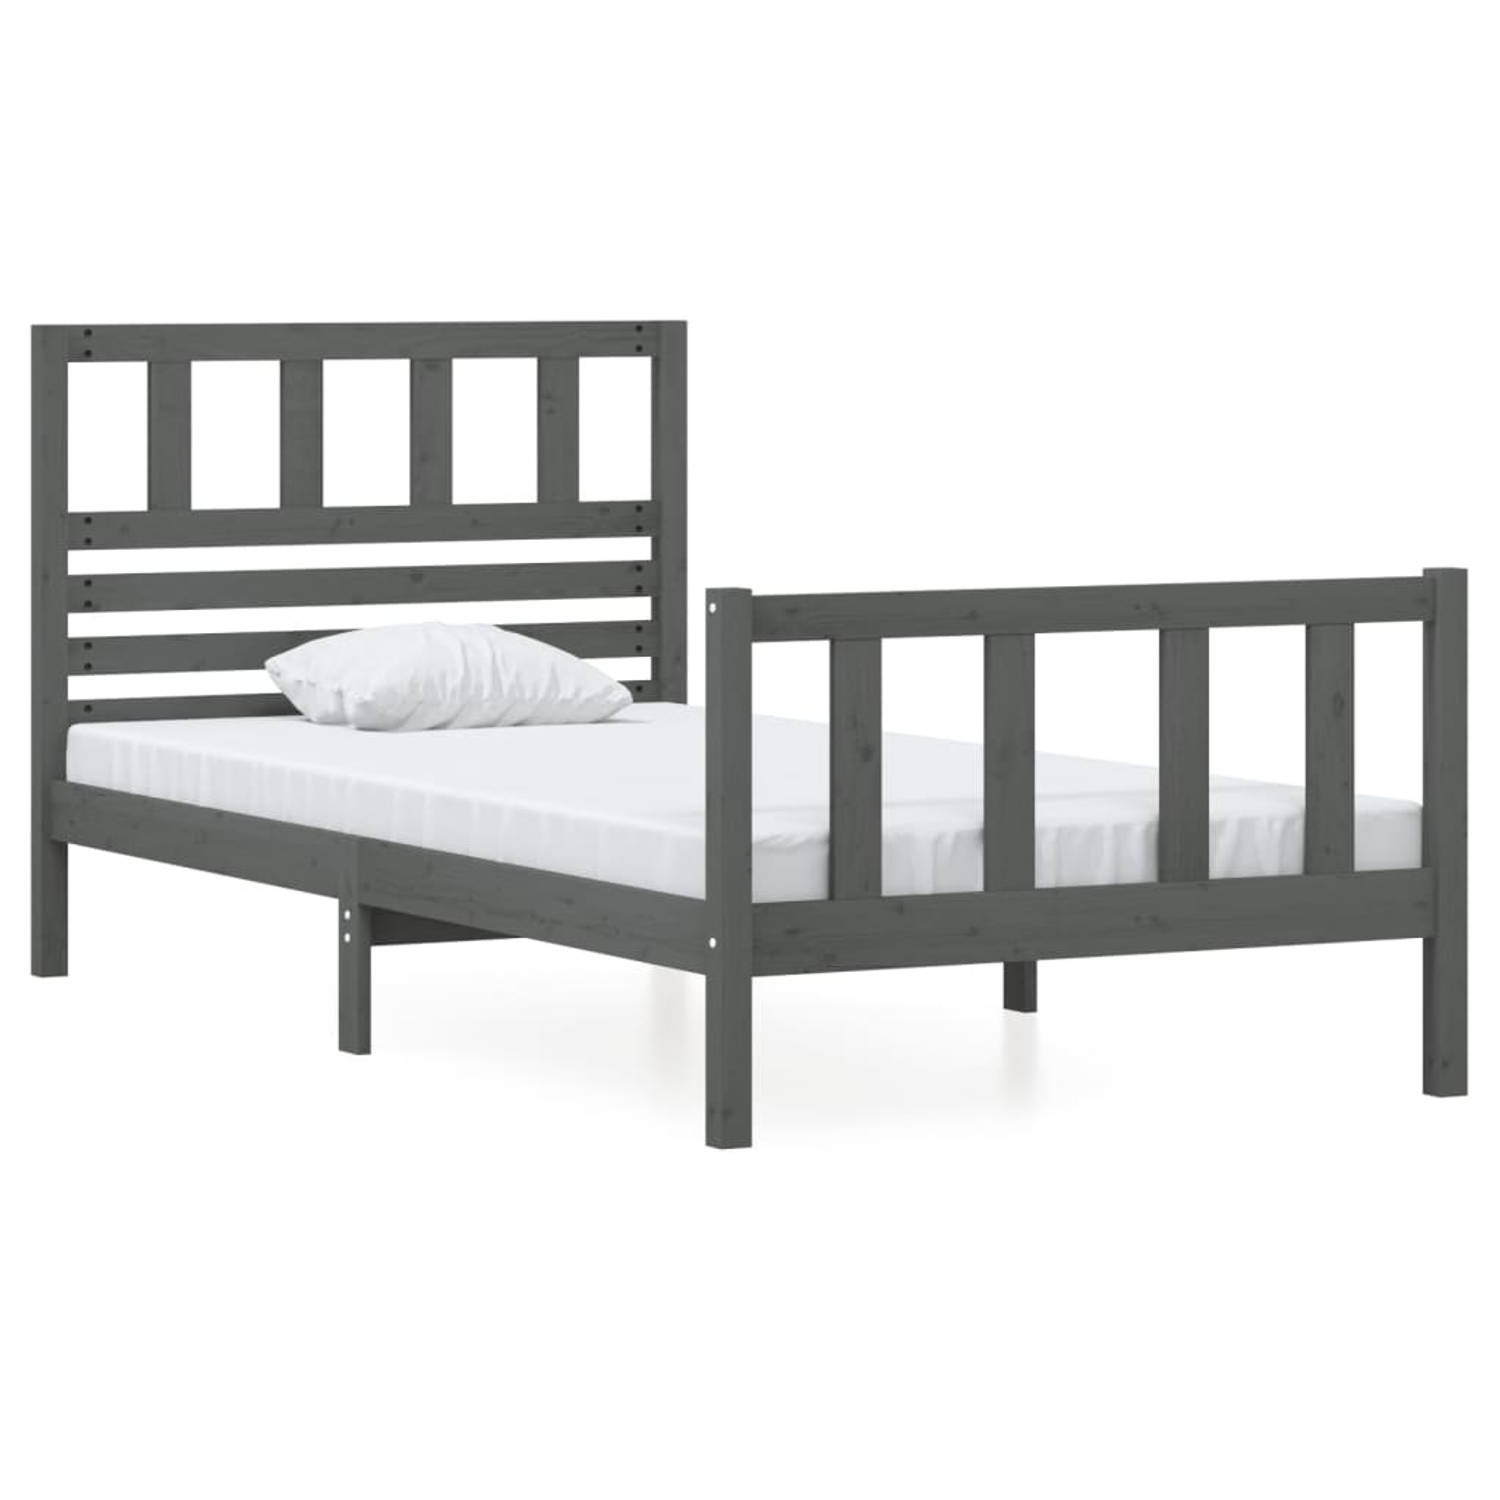 The Living Store Bedframe massief hout grijs 90x200 cm - Bedframe - Bedframes - Eenpersoonsbed - Bed - Bedombouw - Frame - Bed Frame - Ledikant - Bedframe Met Hoofdeinde - Eenperso